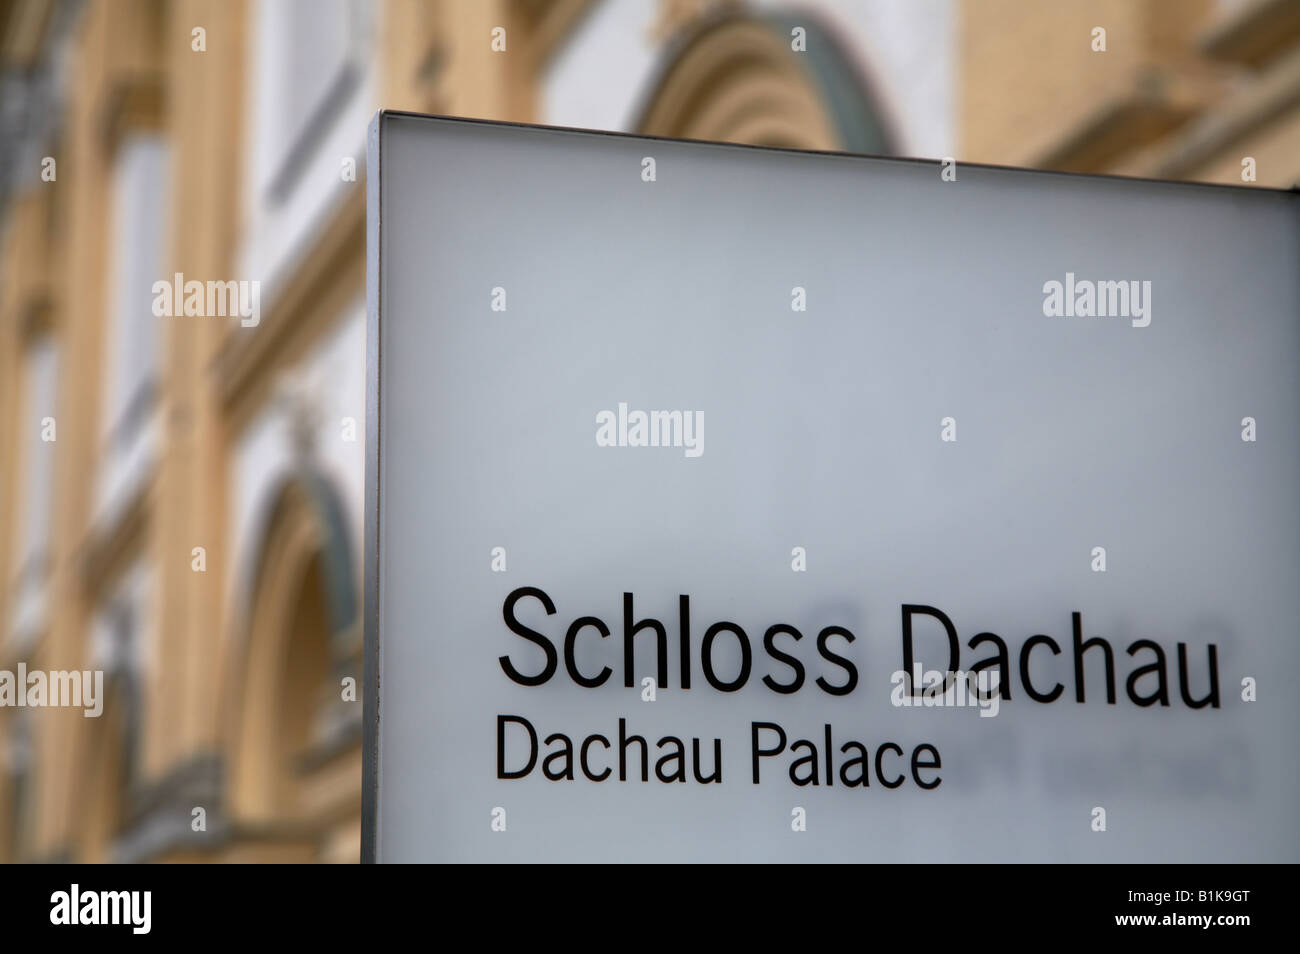 Melden Sie außen Schloss Dachau Palast im Schloss Palast in Bayern in Deutschland Stockfoto